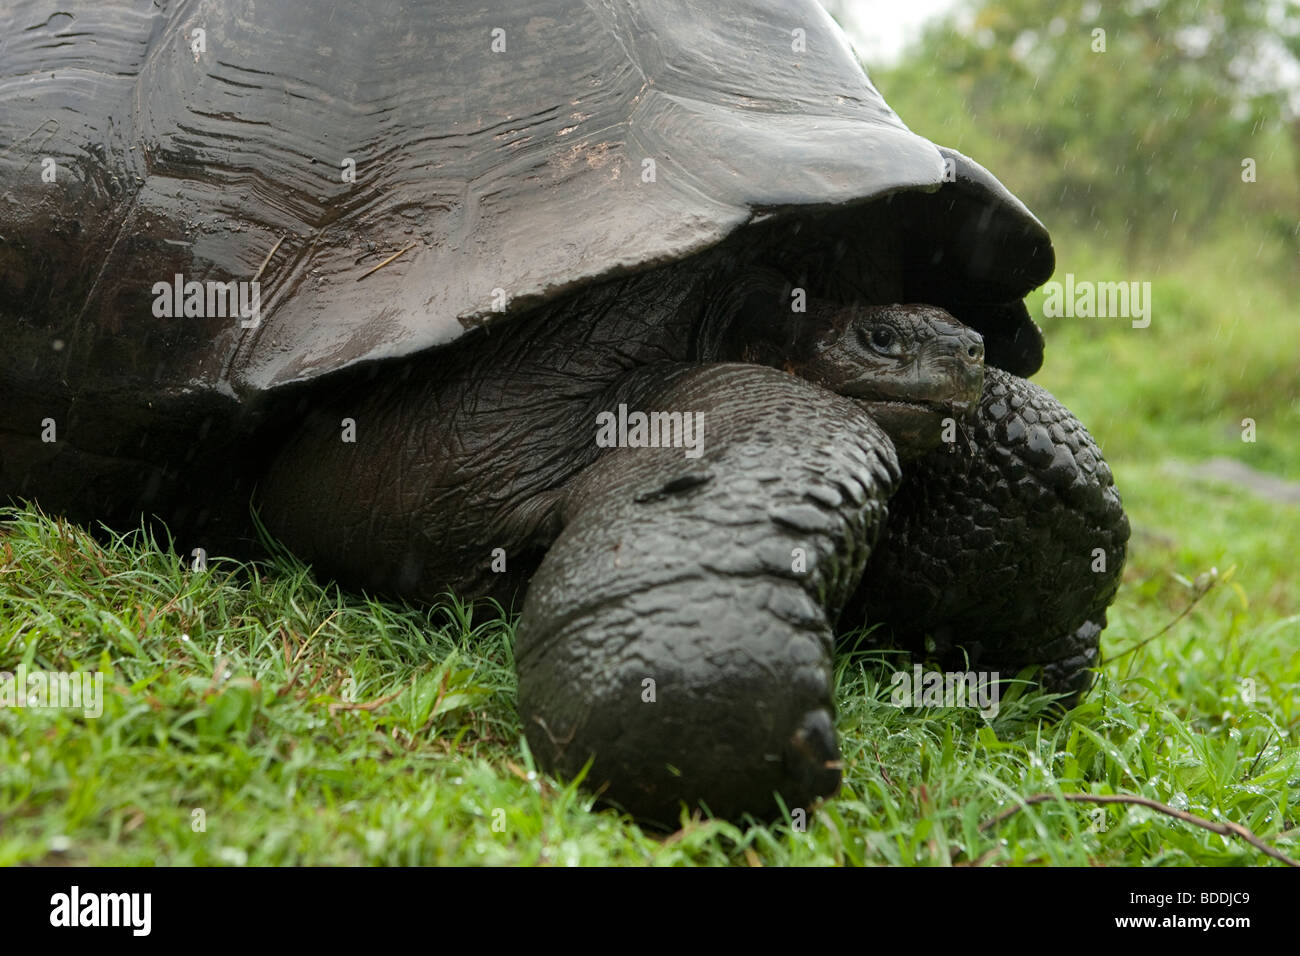 A Galápagos Giant Tortoise retracts his head into his shell for defense in the highlands of Santa Cruz island, Galapagos Ecuador Stock Photo